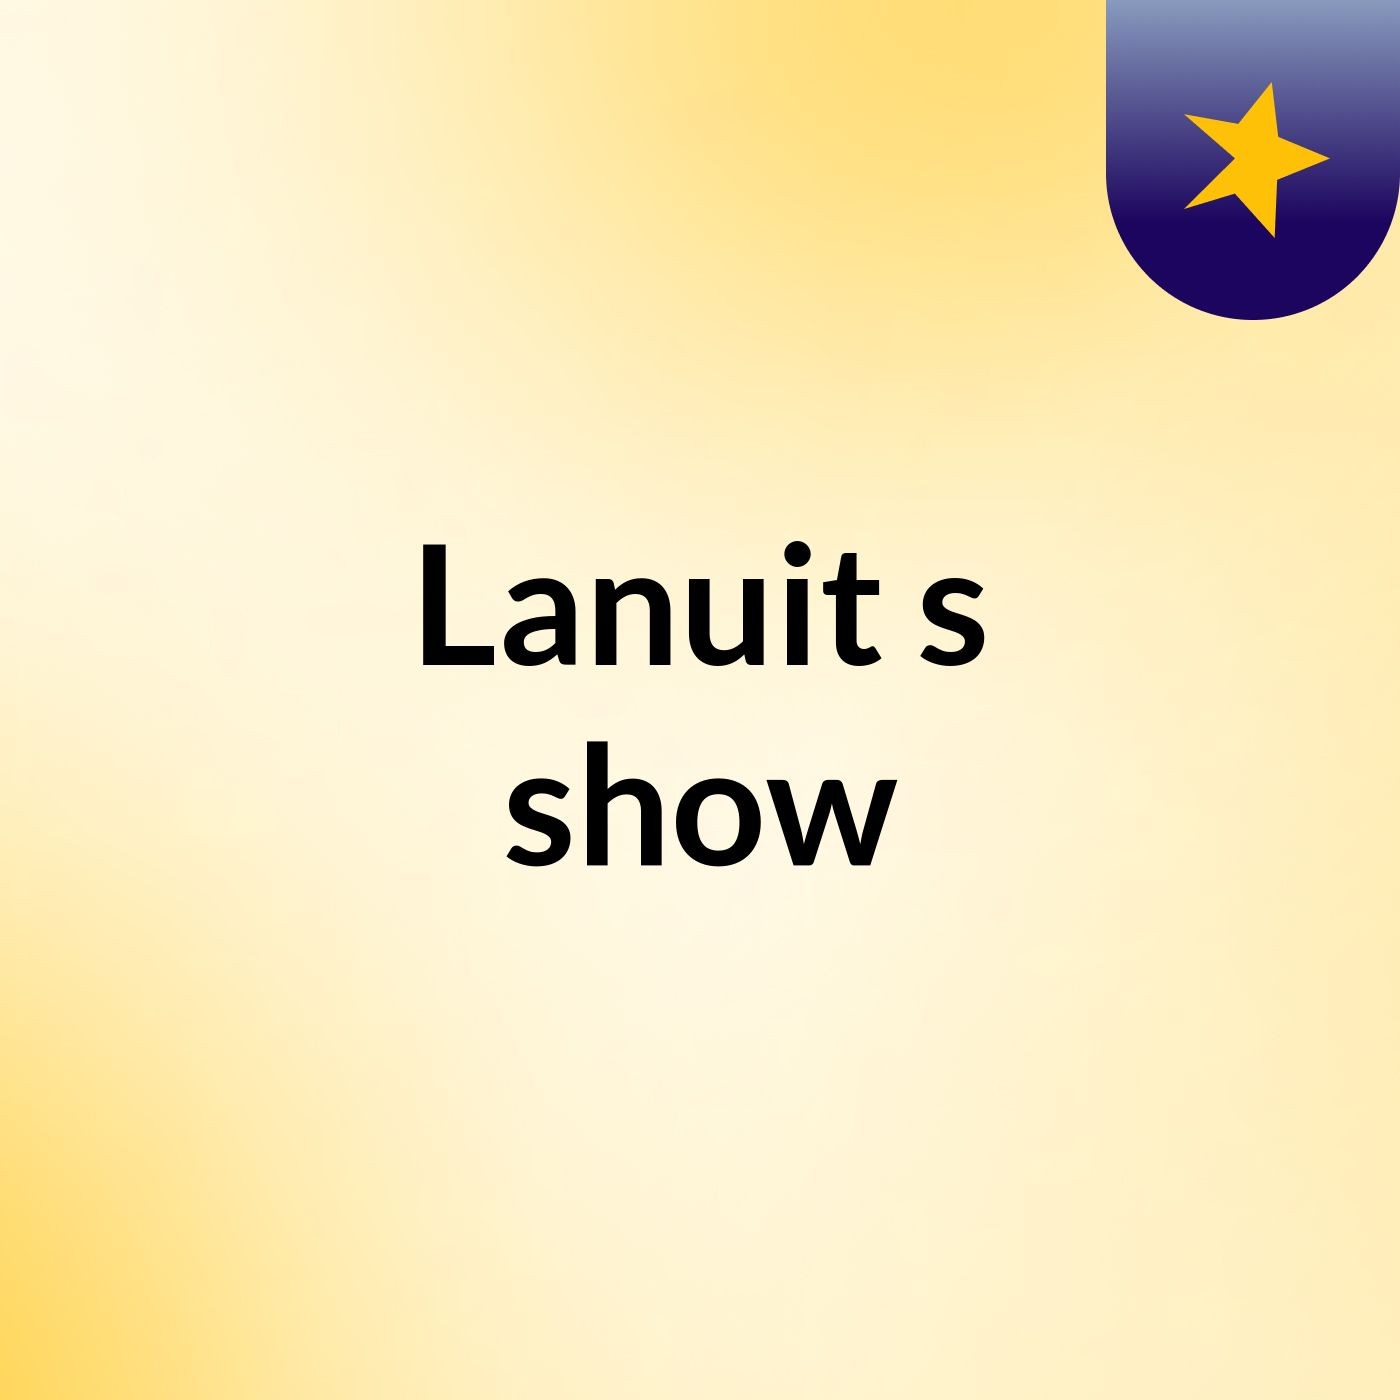 Lanuit's show